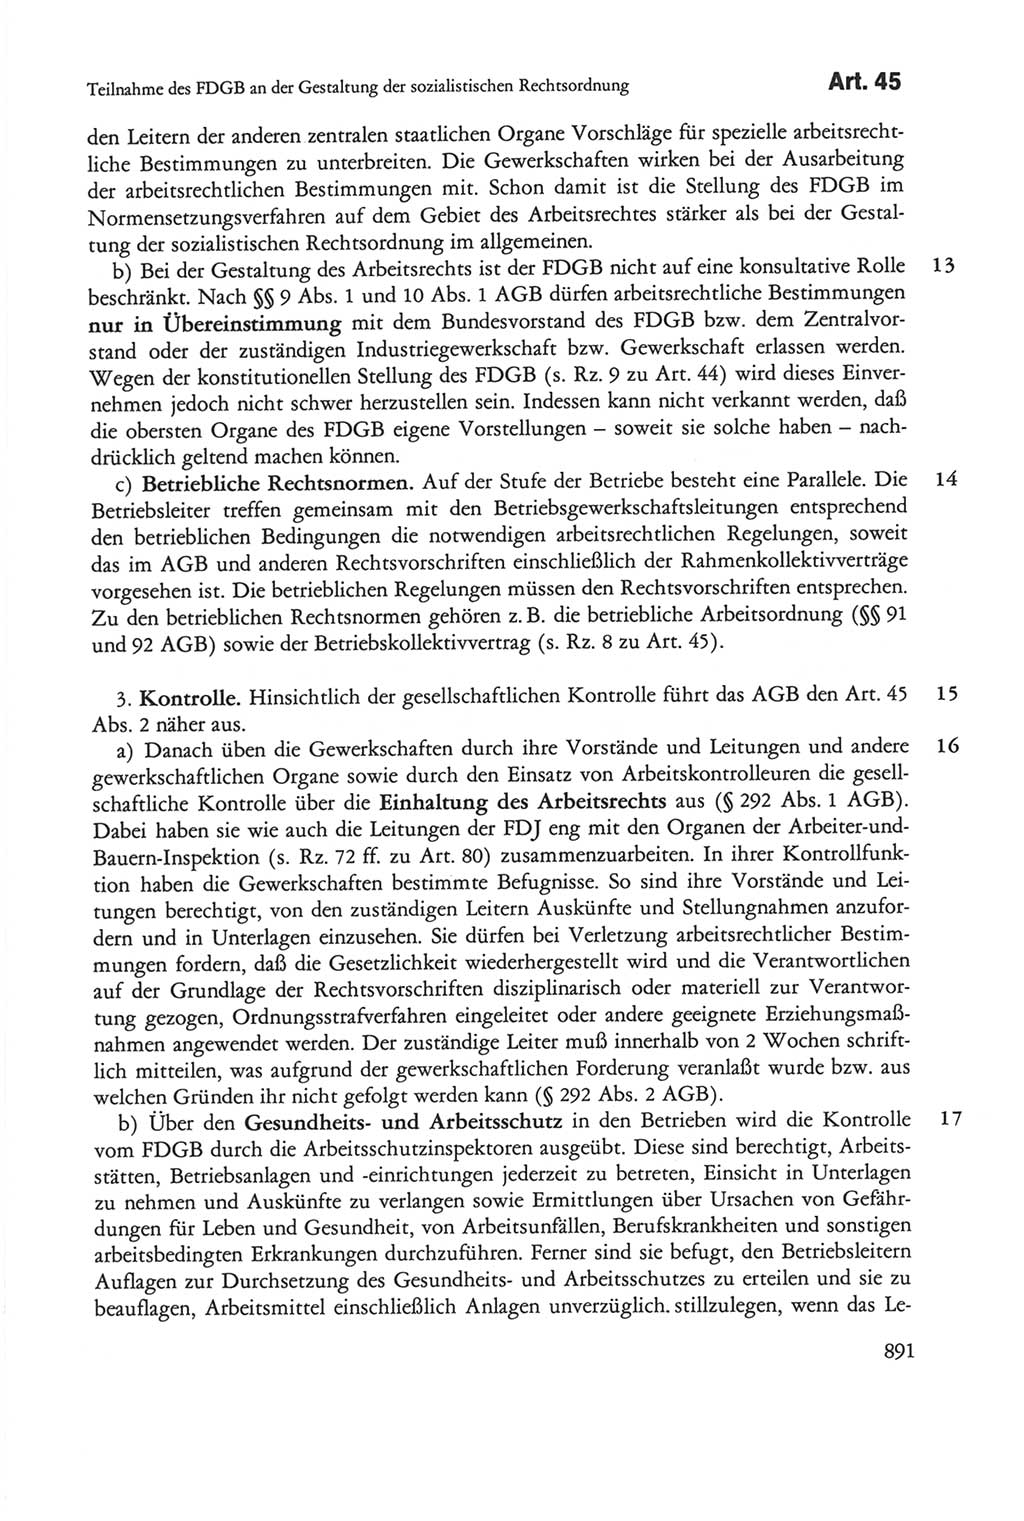 Die sozialistische Verfassung der Deutschen Demokratischen Republik (DDR), Kommentar mit einem Nachtrag 1997, Seite 891 (Soz. Verf. DDR Komm. Nachtr. 1997, S. 891)